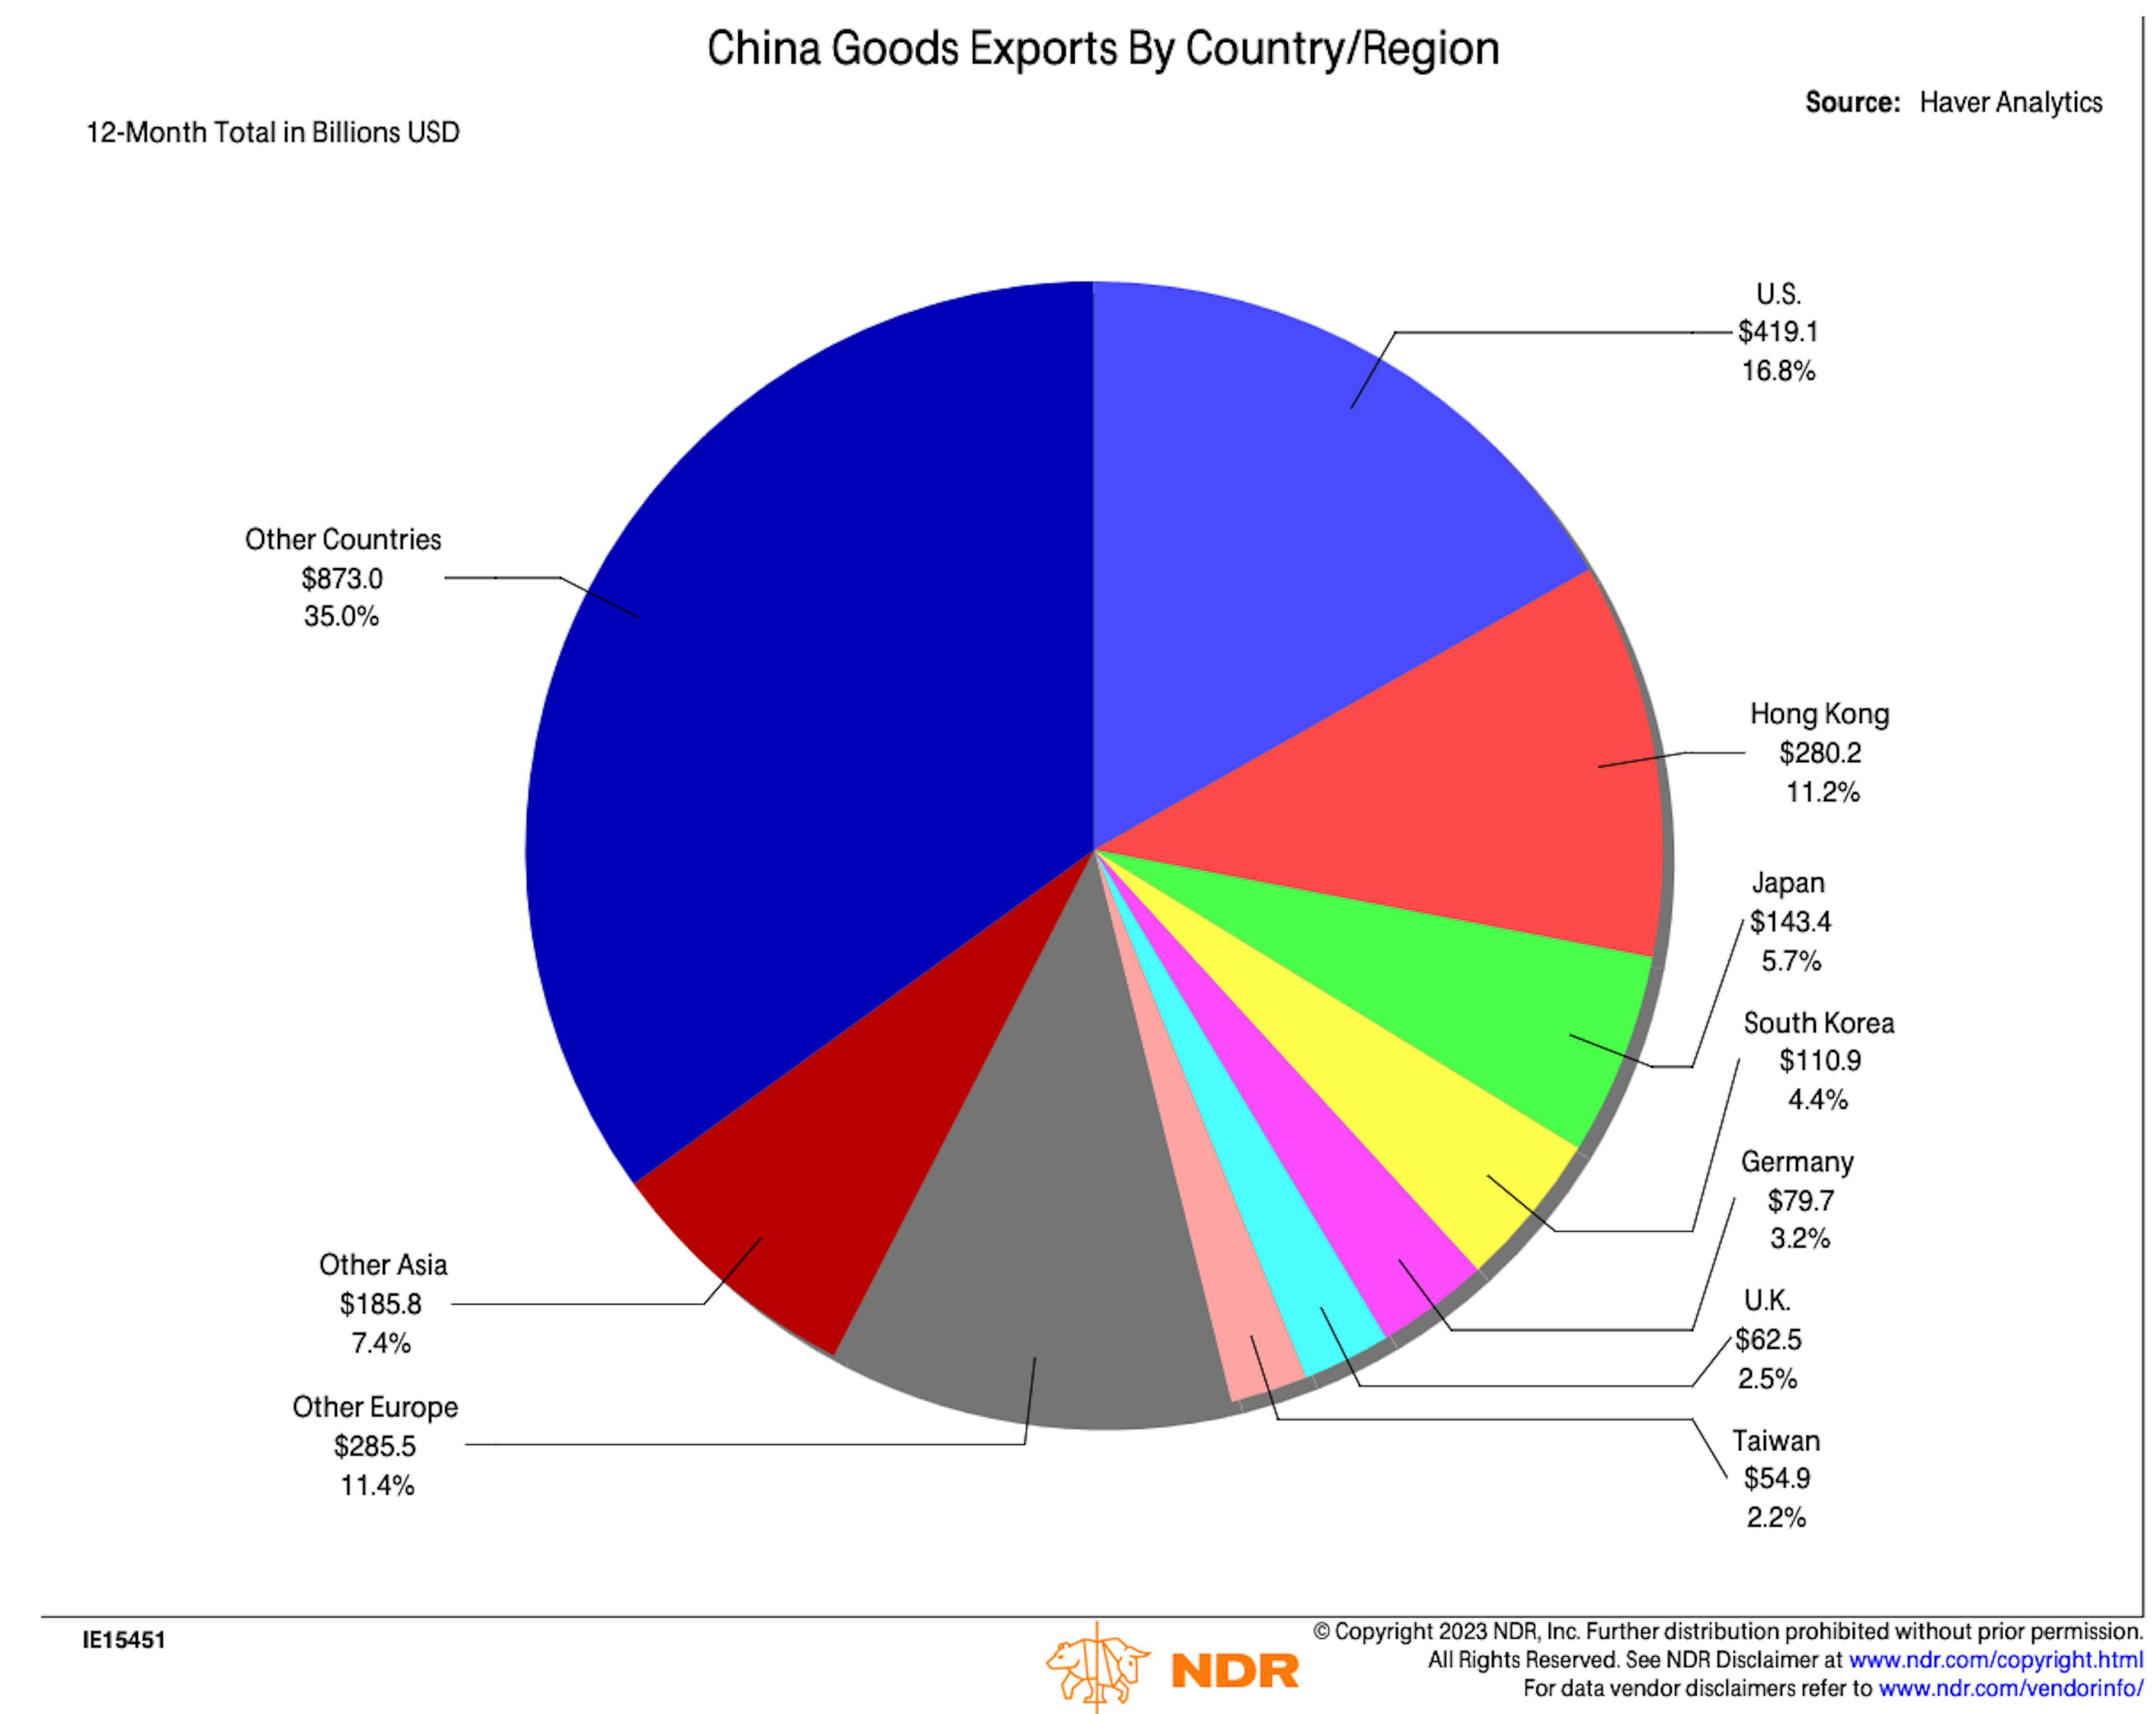 Америка + Европа вместе взятые являются крупнейшим направлением китайского экспорта.